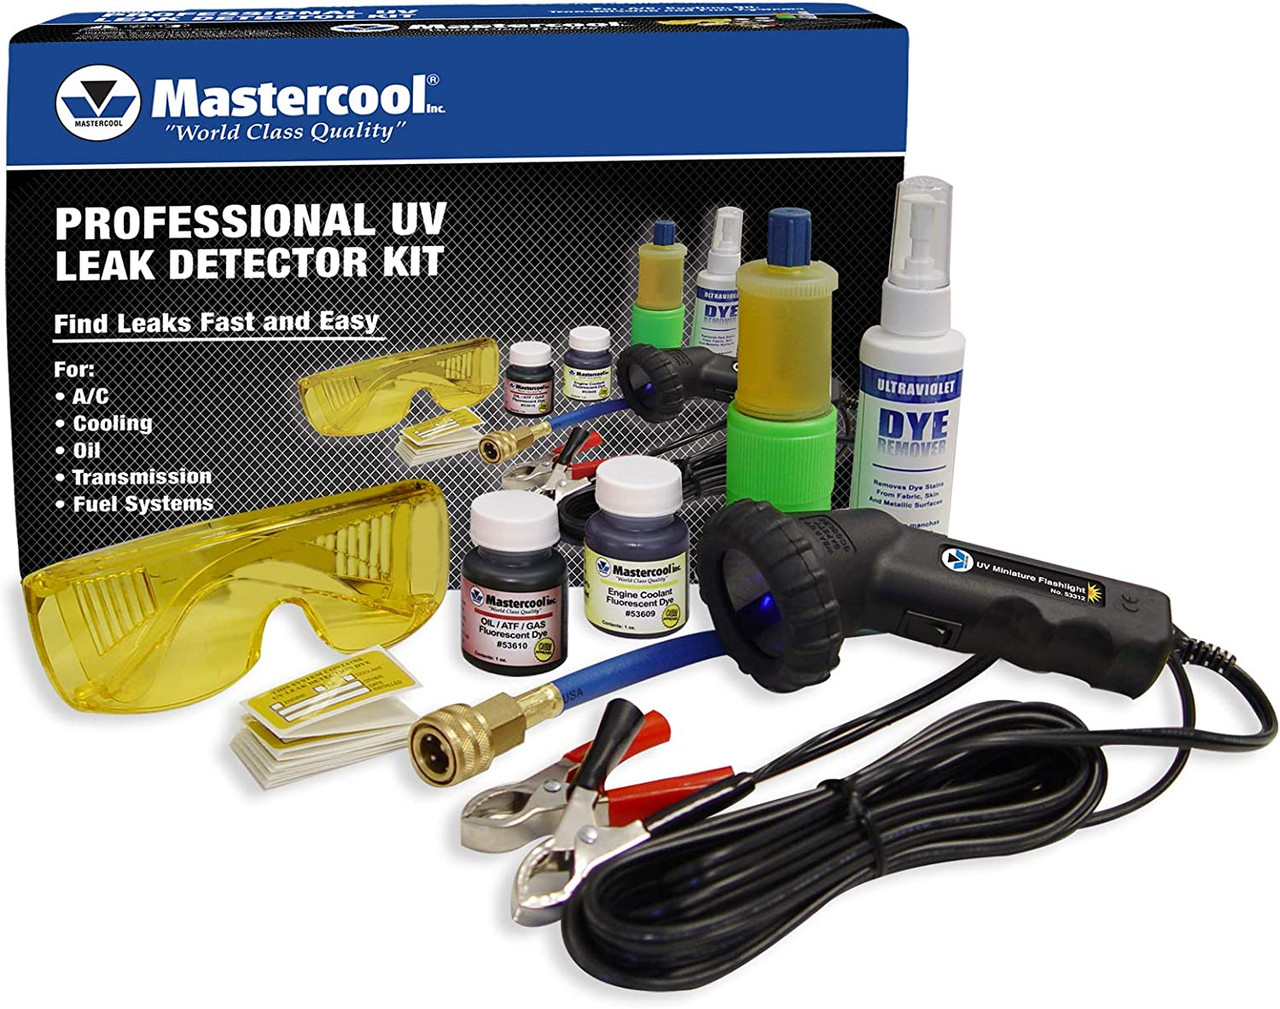 Professional UV Dye Light Kit (MSC53351)